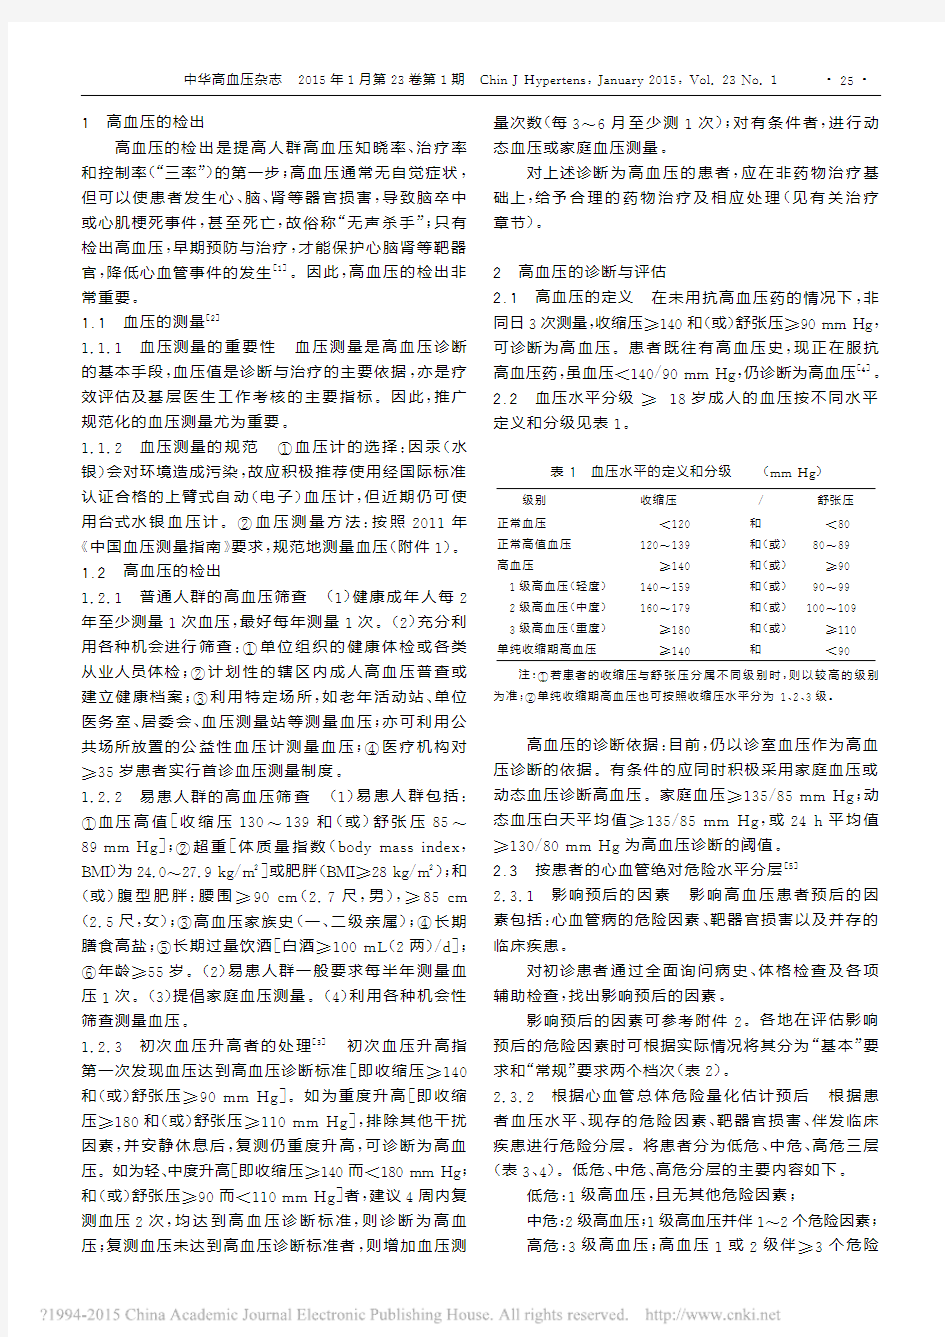 中国高血压基层管理指南_2014年修订版_